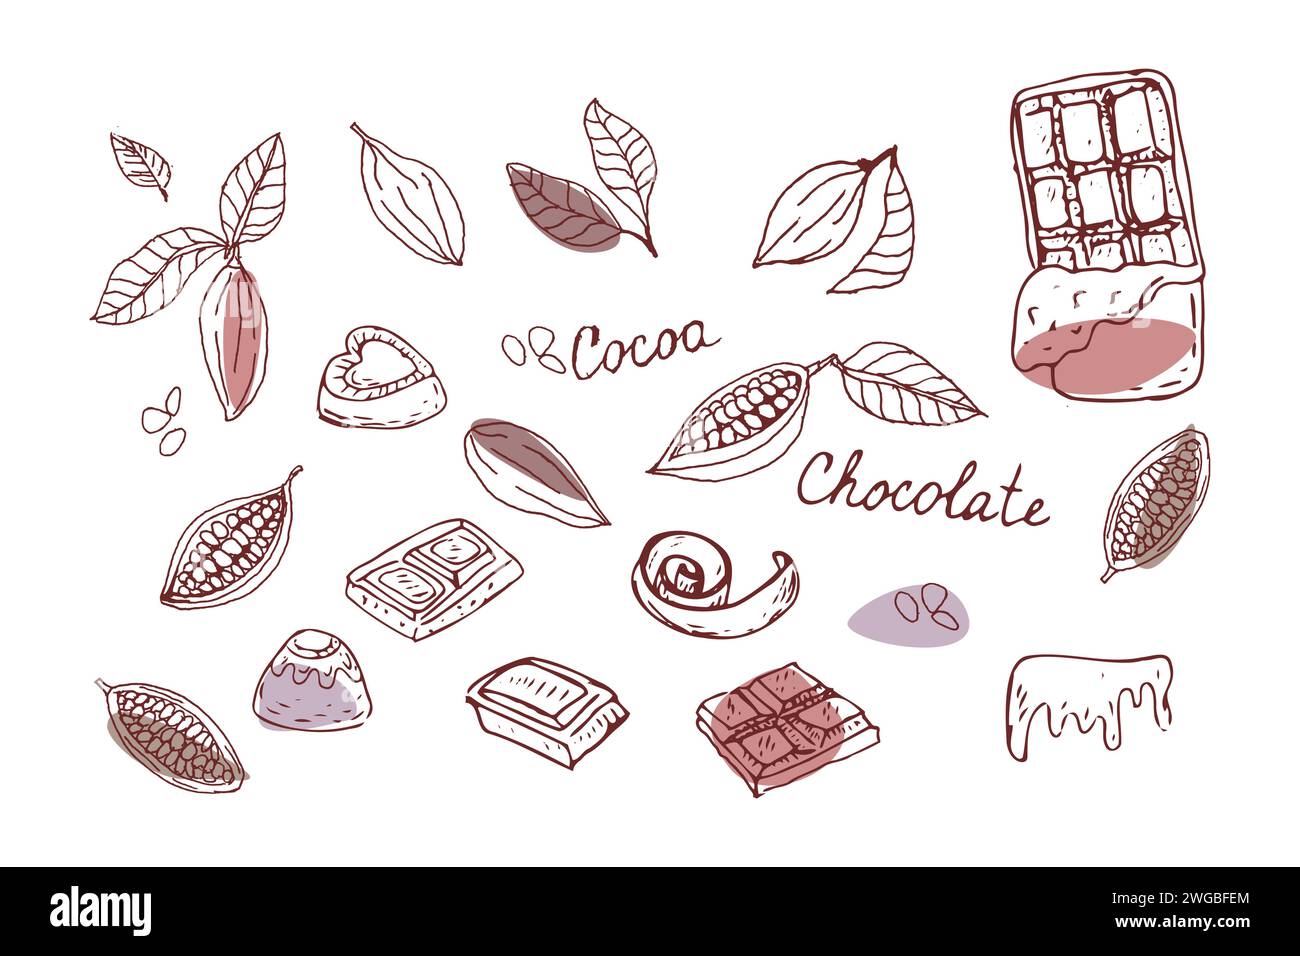 Contorno di cioccolato e fagioli di cacao. Illustrazione vettoriale con forme colorate. Illustrazione vettoriale del contorno disegnata a mano. Adatto per imballaggio, imballaggio, poster. Fette di cioccolato, patatine e caramelle. Illustrazione Vettoriale